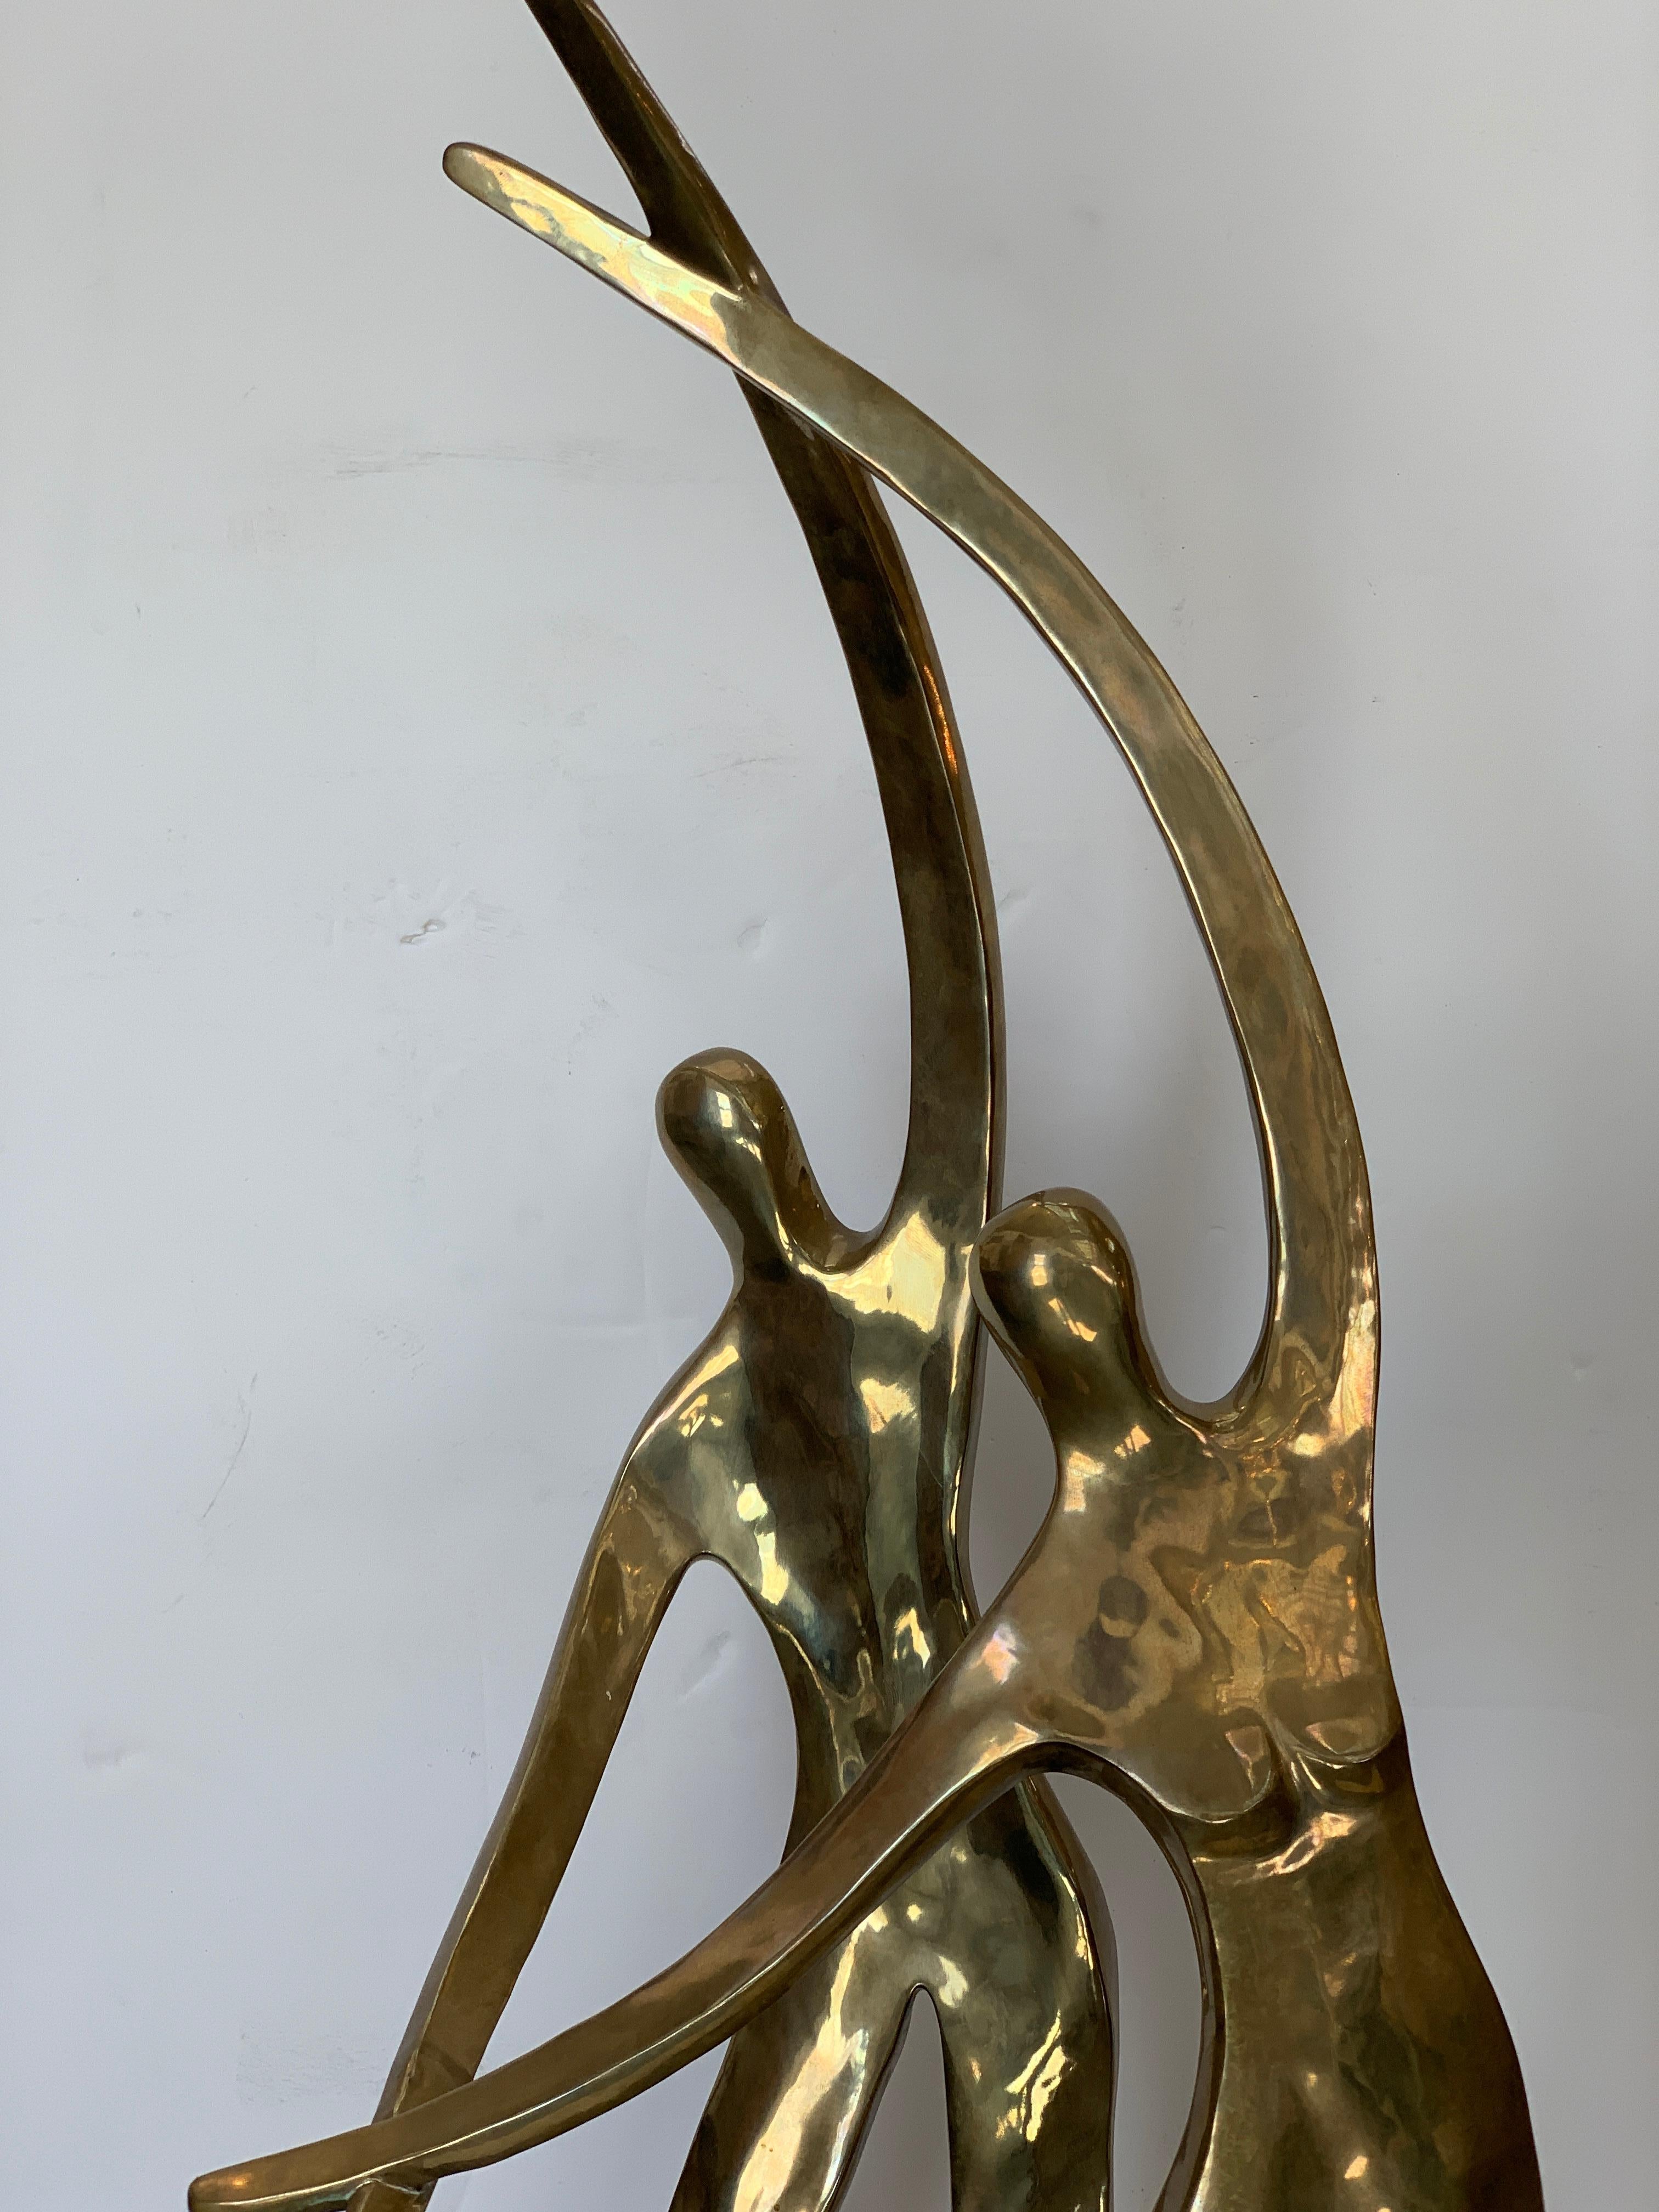 Un grand bronze joliment poli d'un couple de danseurs de 1980 par le célèbre artiste Gardner Locke. Elle est signée et datée de 1980 et porte également la mention AP (artist's proof). Sur une base en pierre ou en quartz. Il y a un coin qui a été